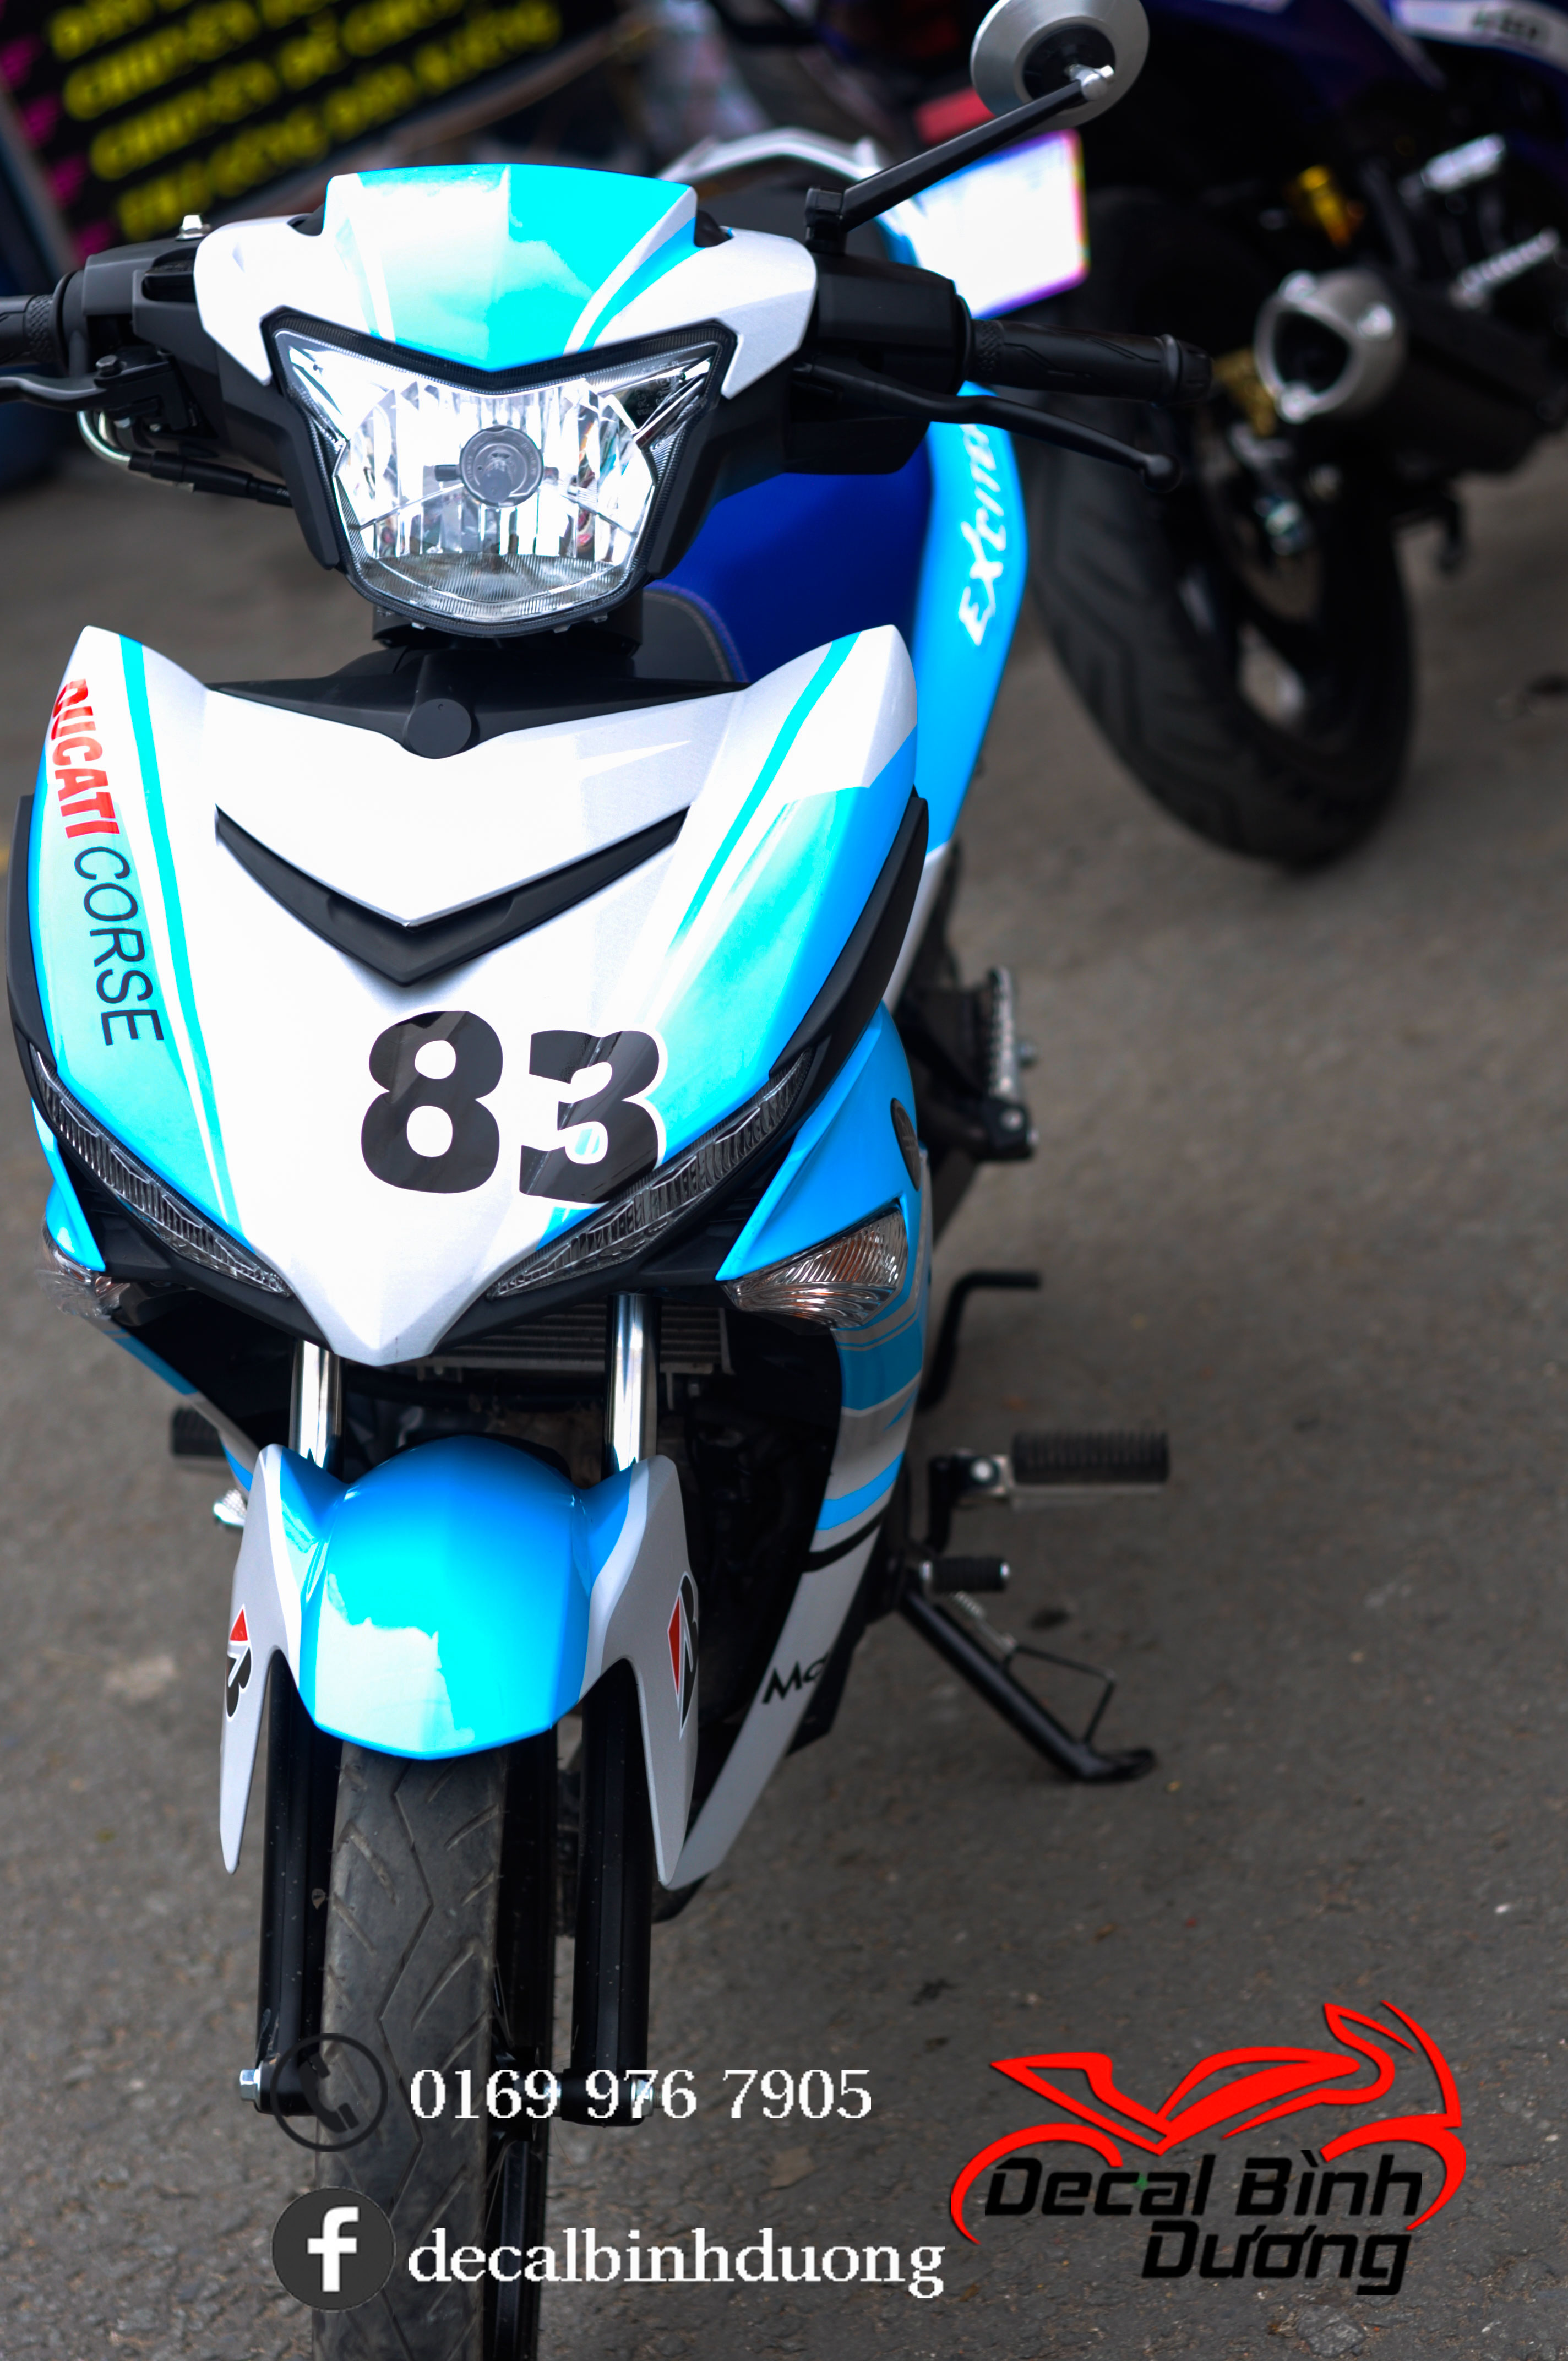 Tem xe Exciter 150 Ducati được thiết kế với màu xanh ngọc tuyệt đẹp phối thêm trắng nổi bật kết hợp các logo tem đấu tạo phong cách đơn giản.